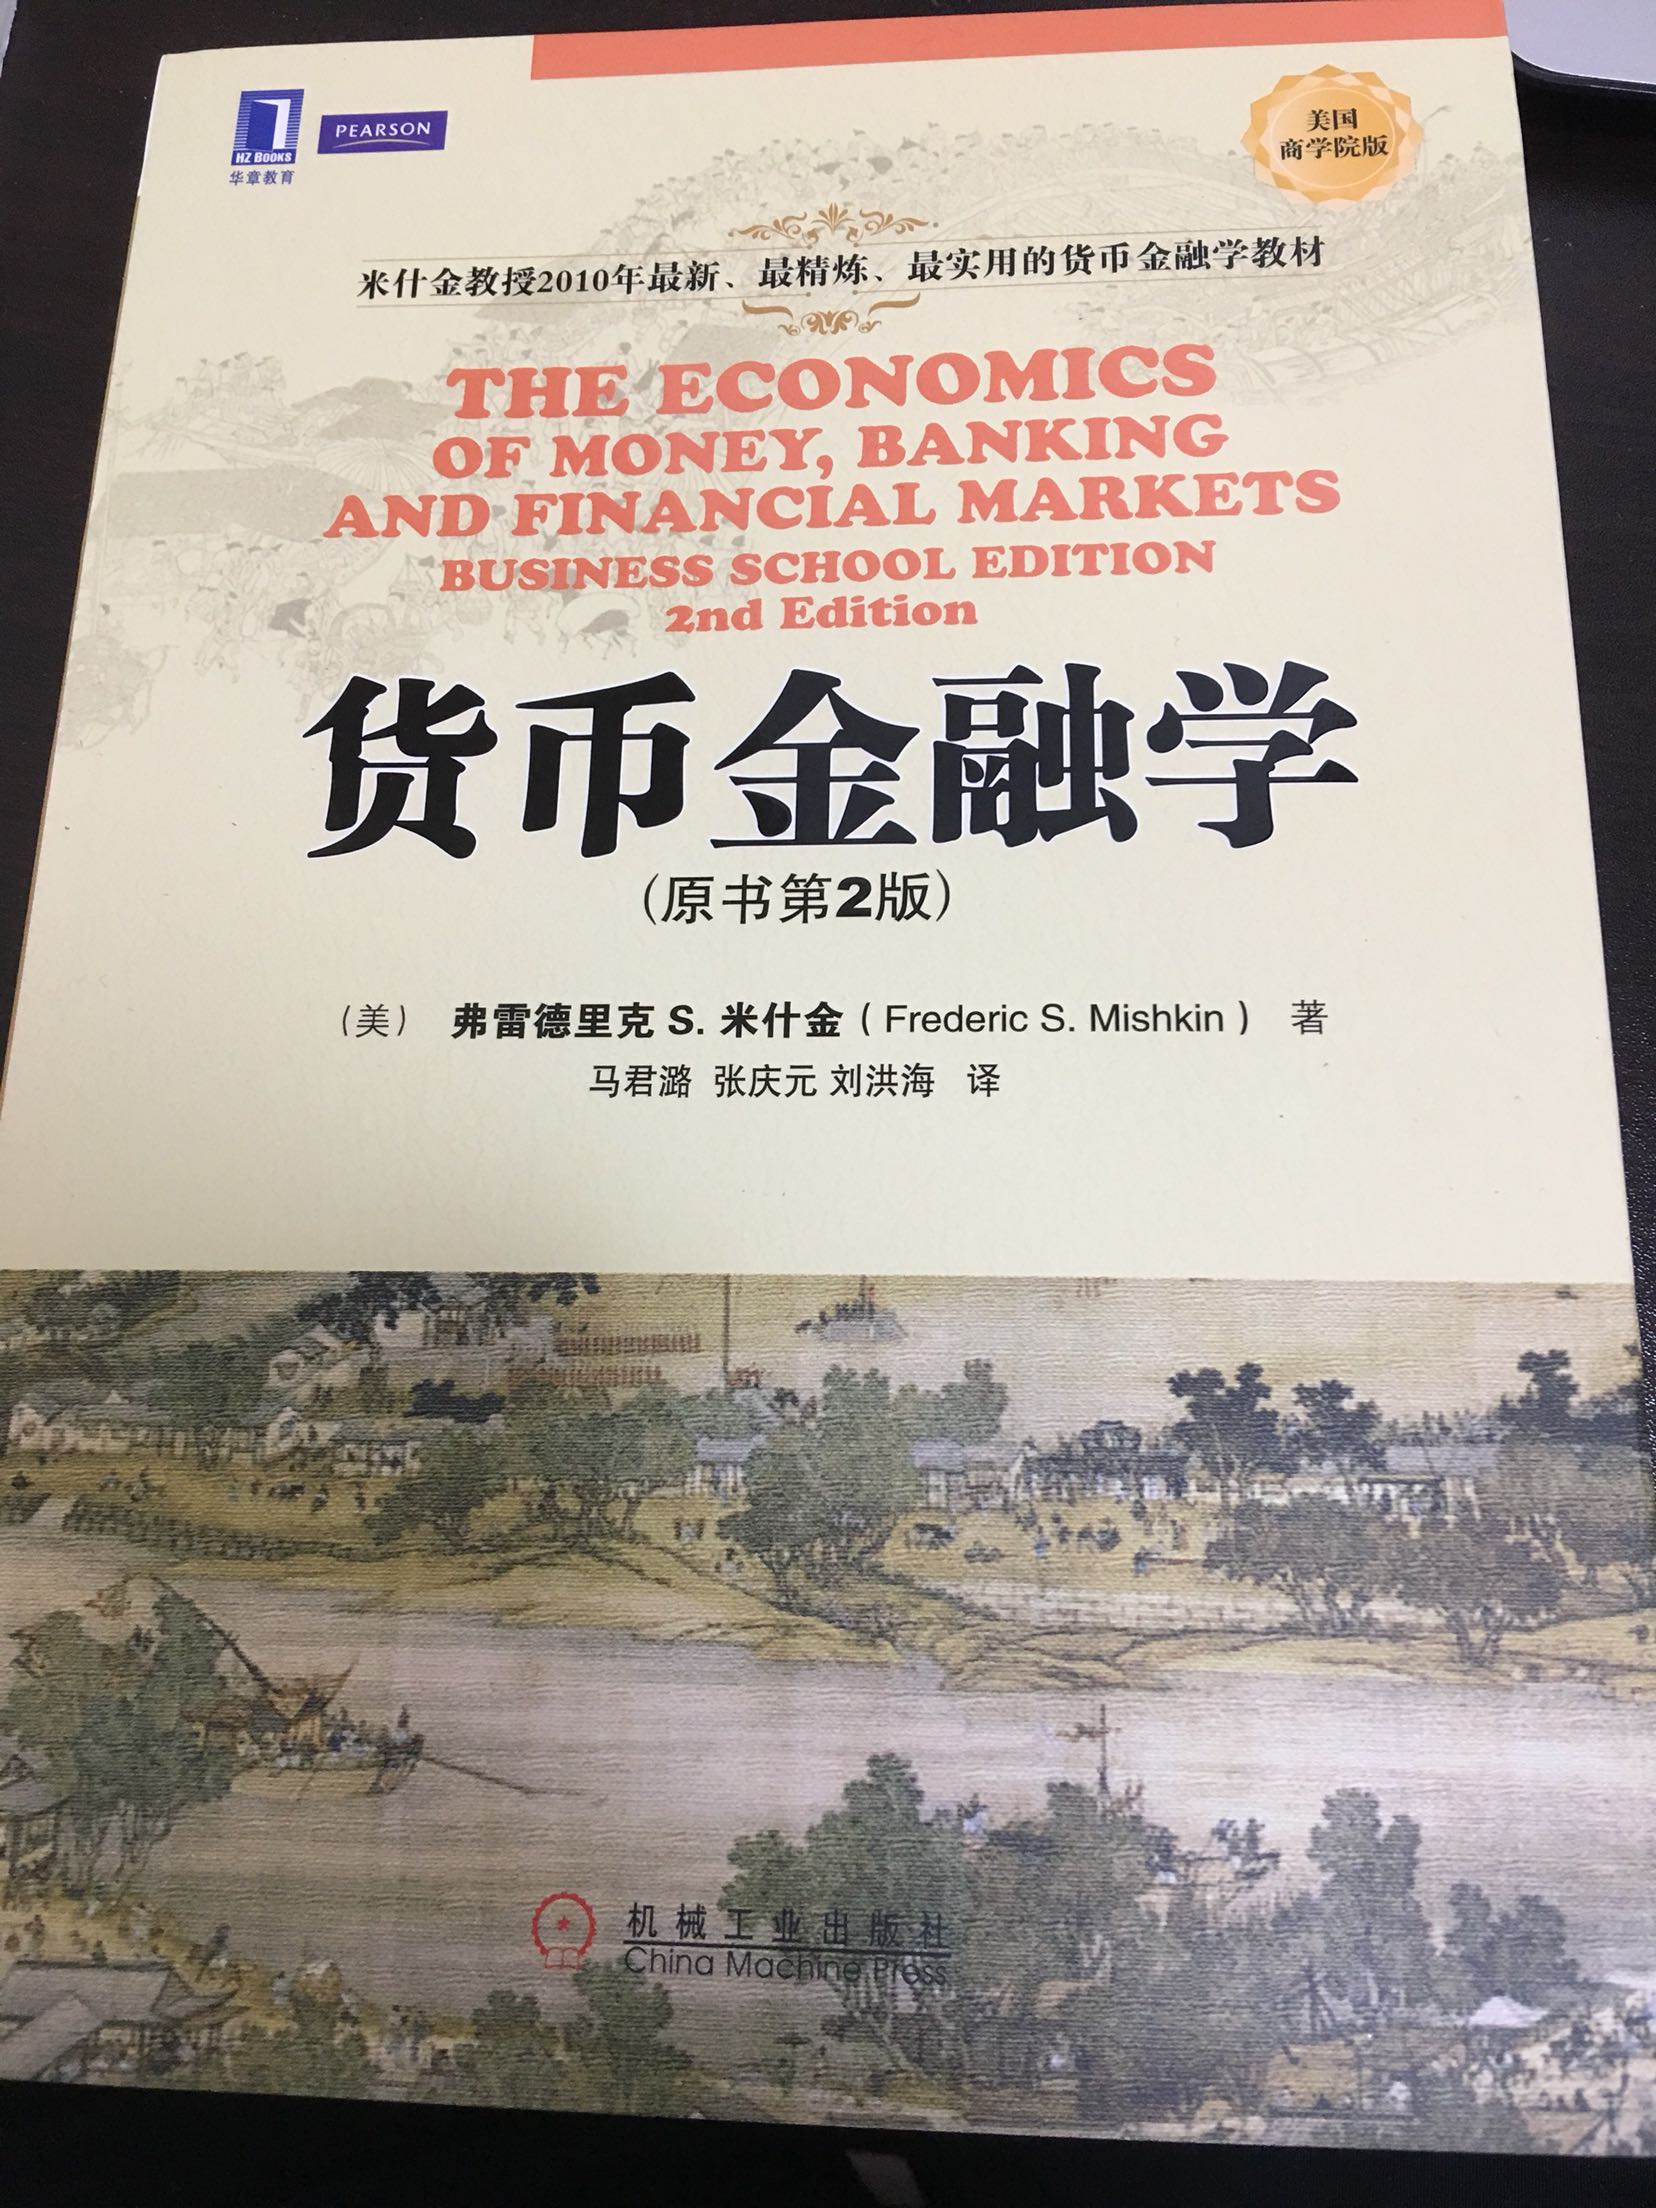 很经典的金融学书籍，希望可以学到想学的货币金融学知识